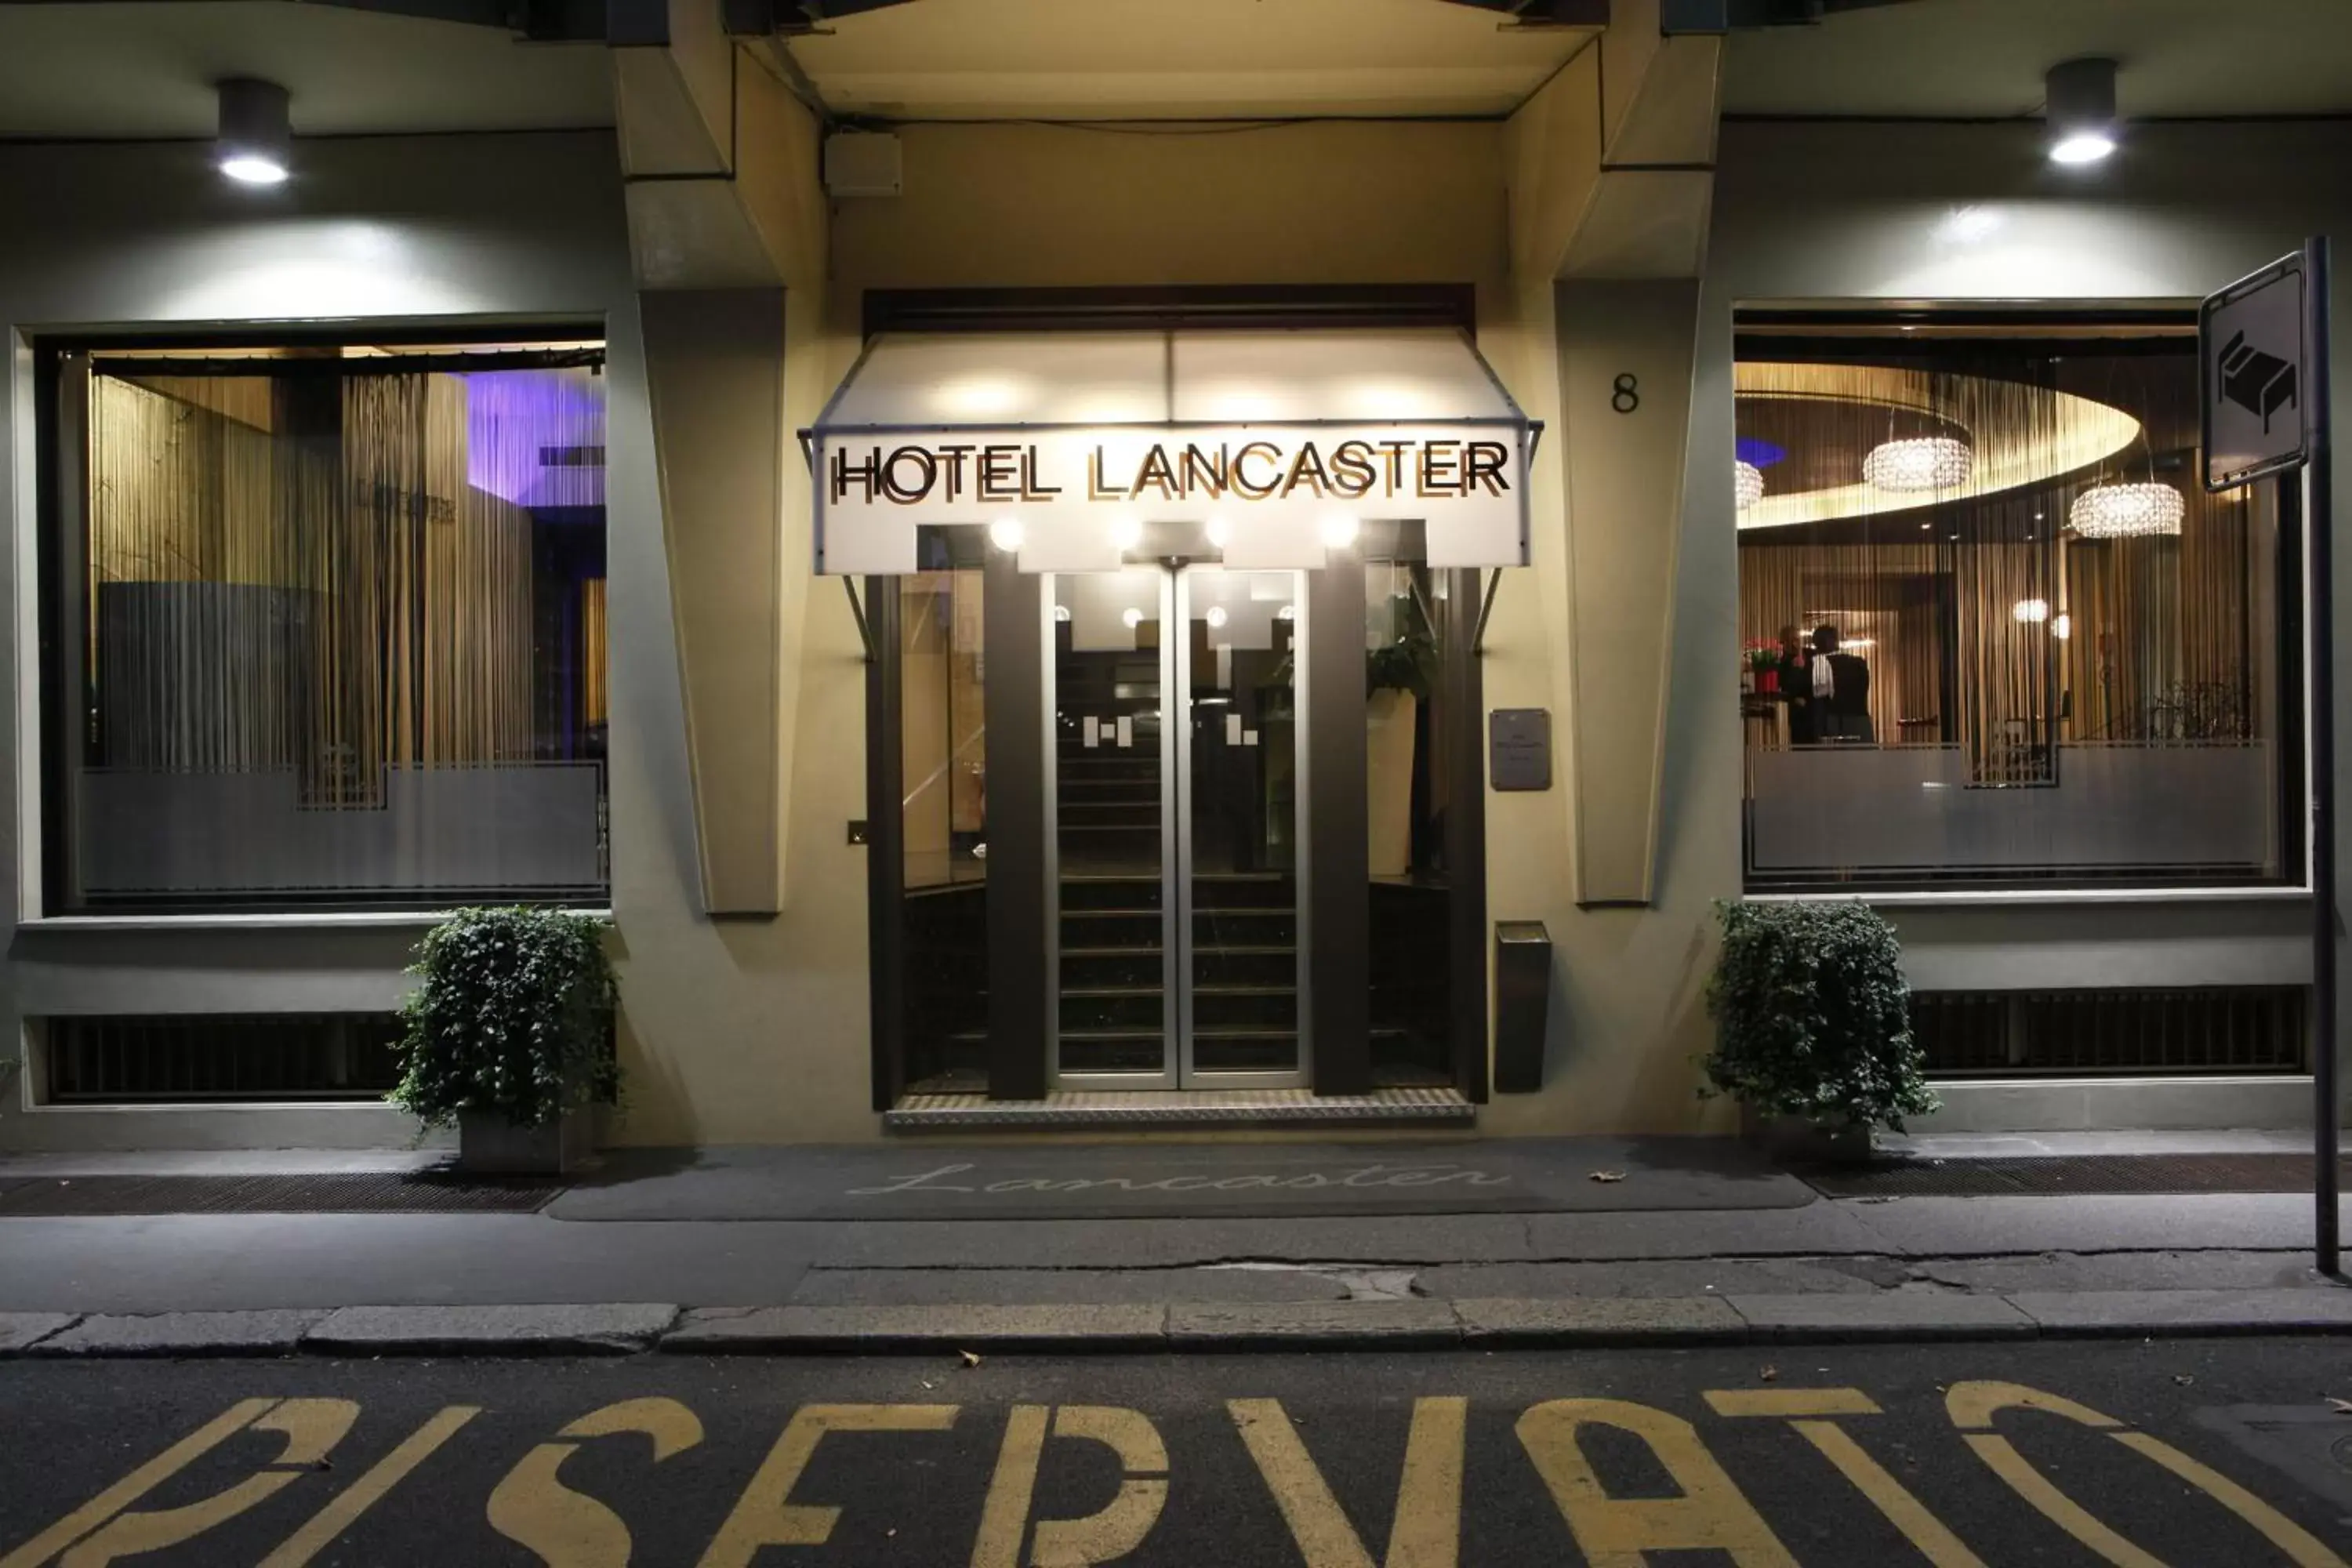 Facade/entrance in Hotel Lancaster